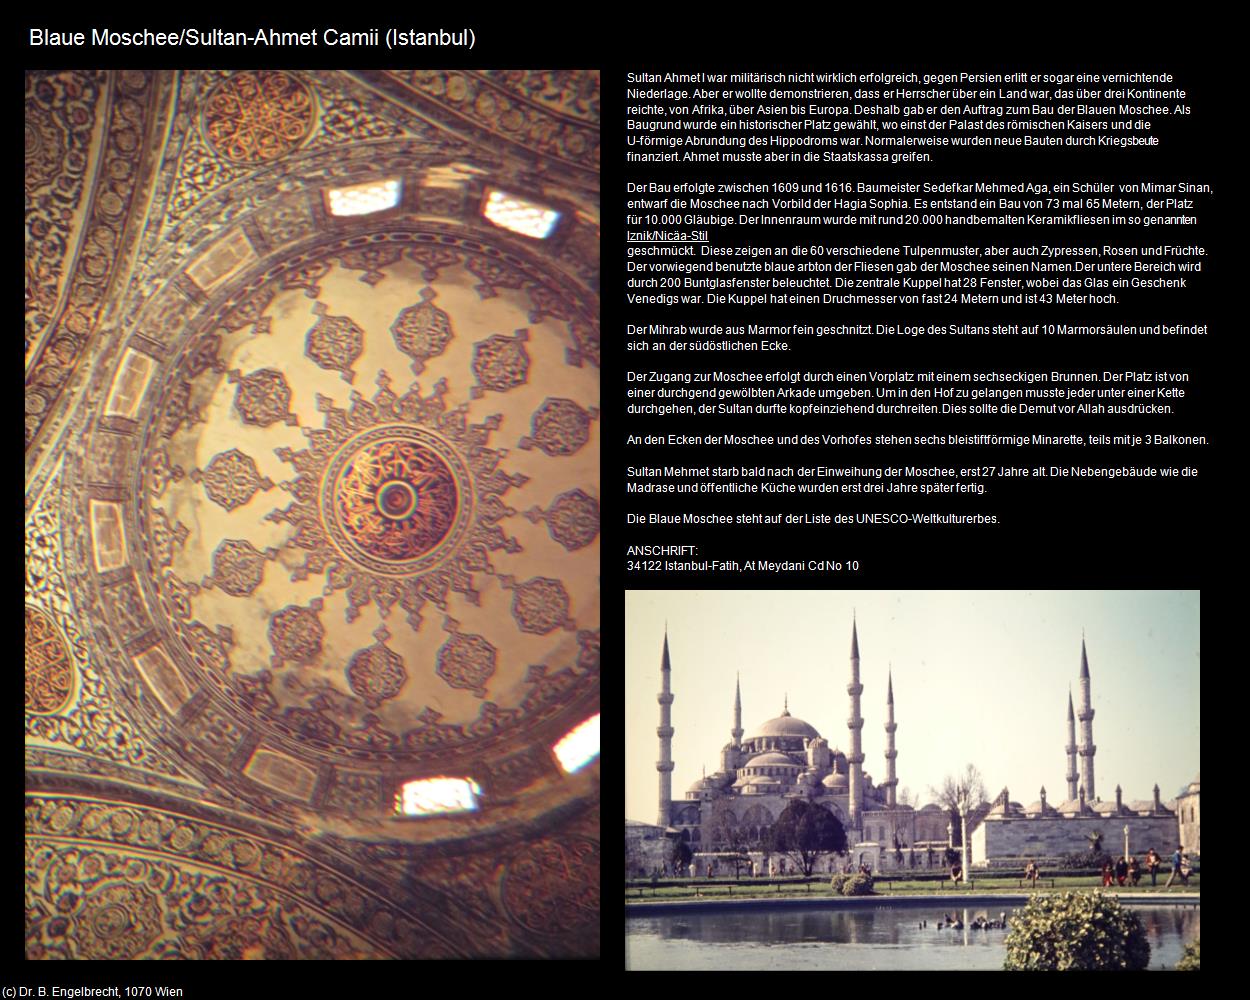 Blaue Moschee/Sultan-Ahmet Camii (Istanbul) in TÜRKEI(c)B.Engelbrecht